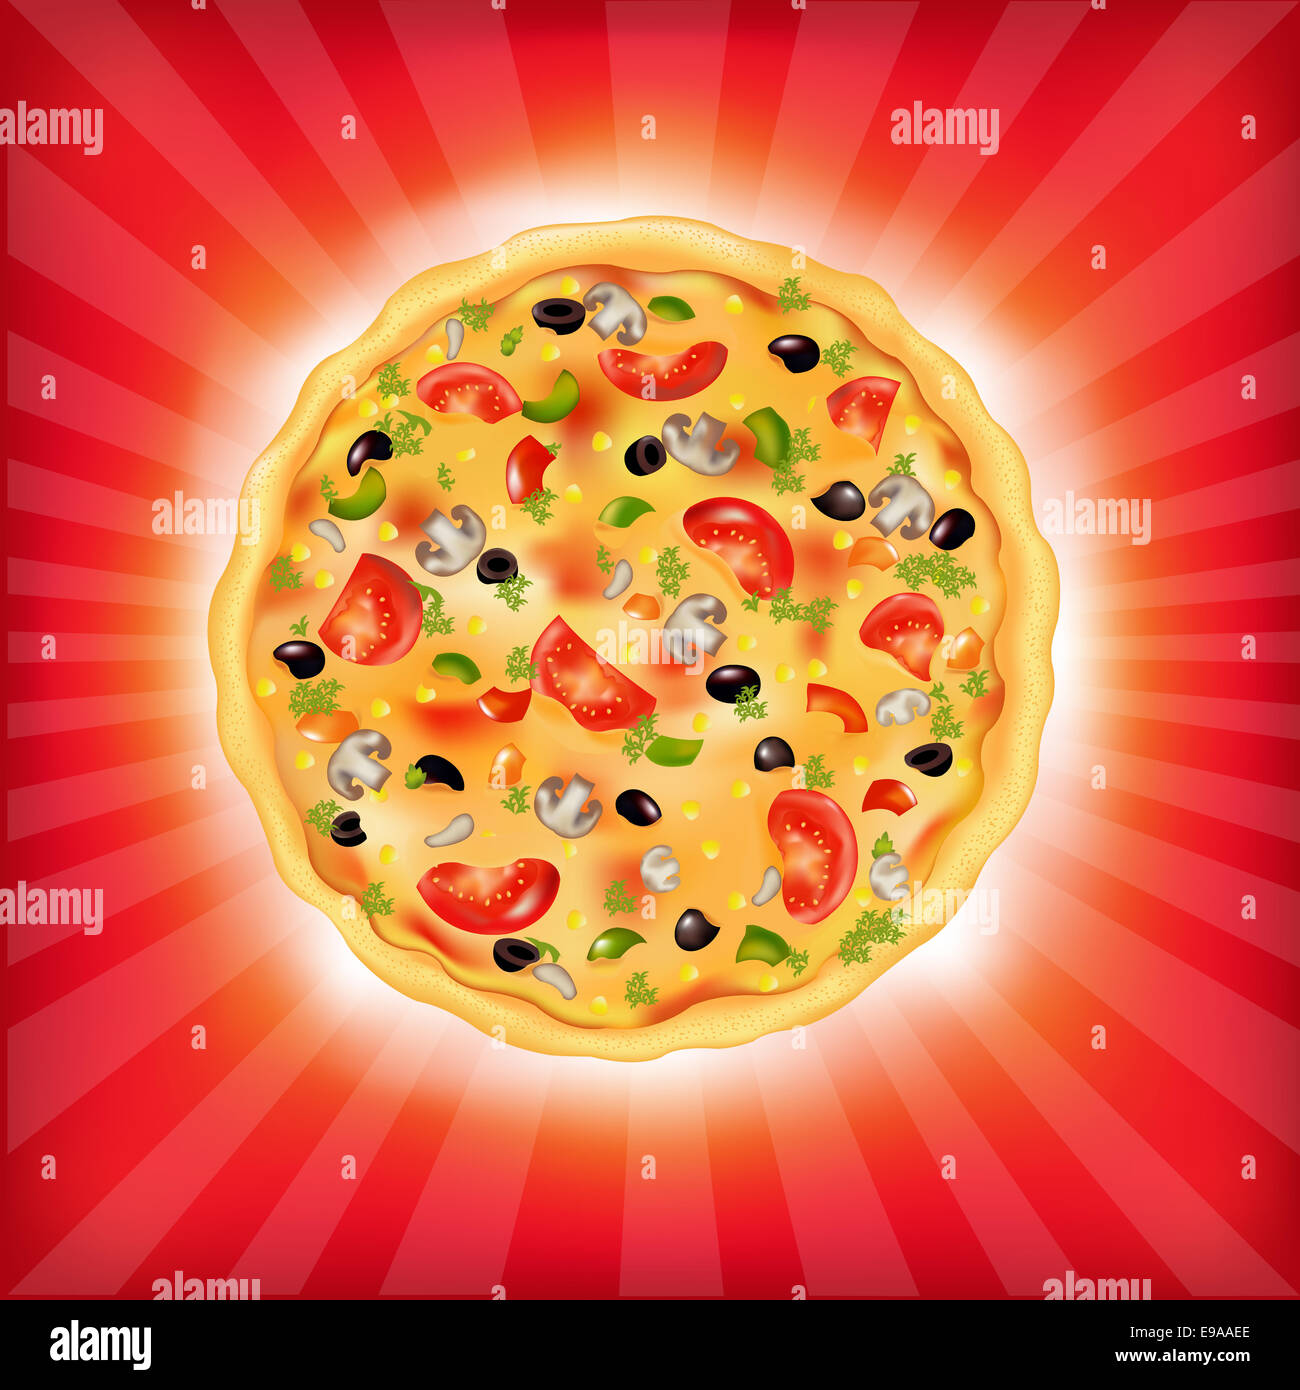 Sunburst Background With Pizza Stock Photo